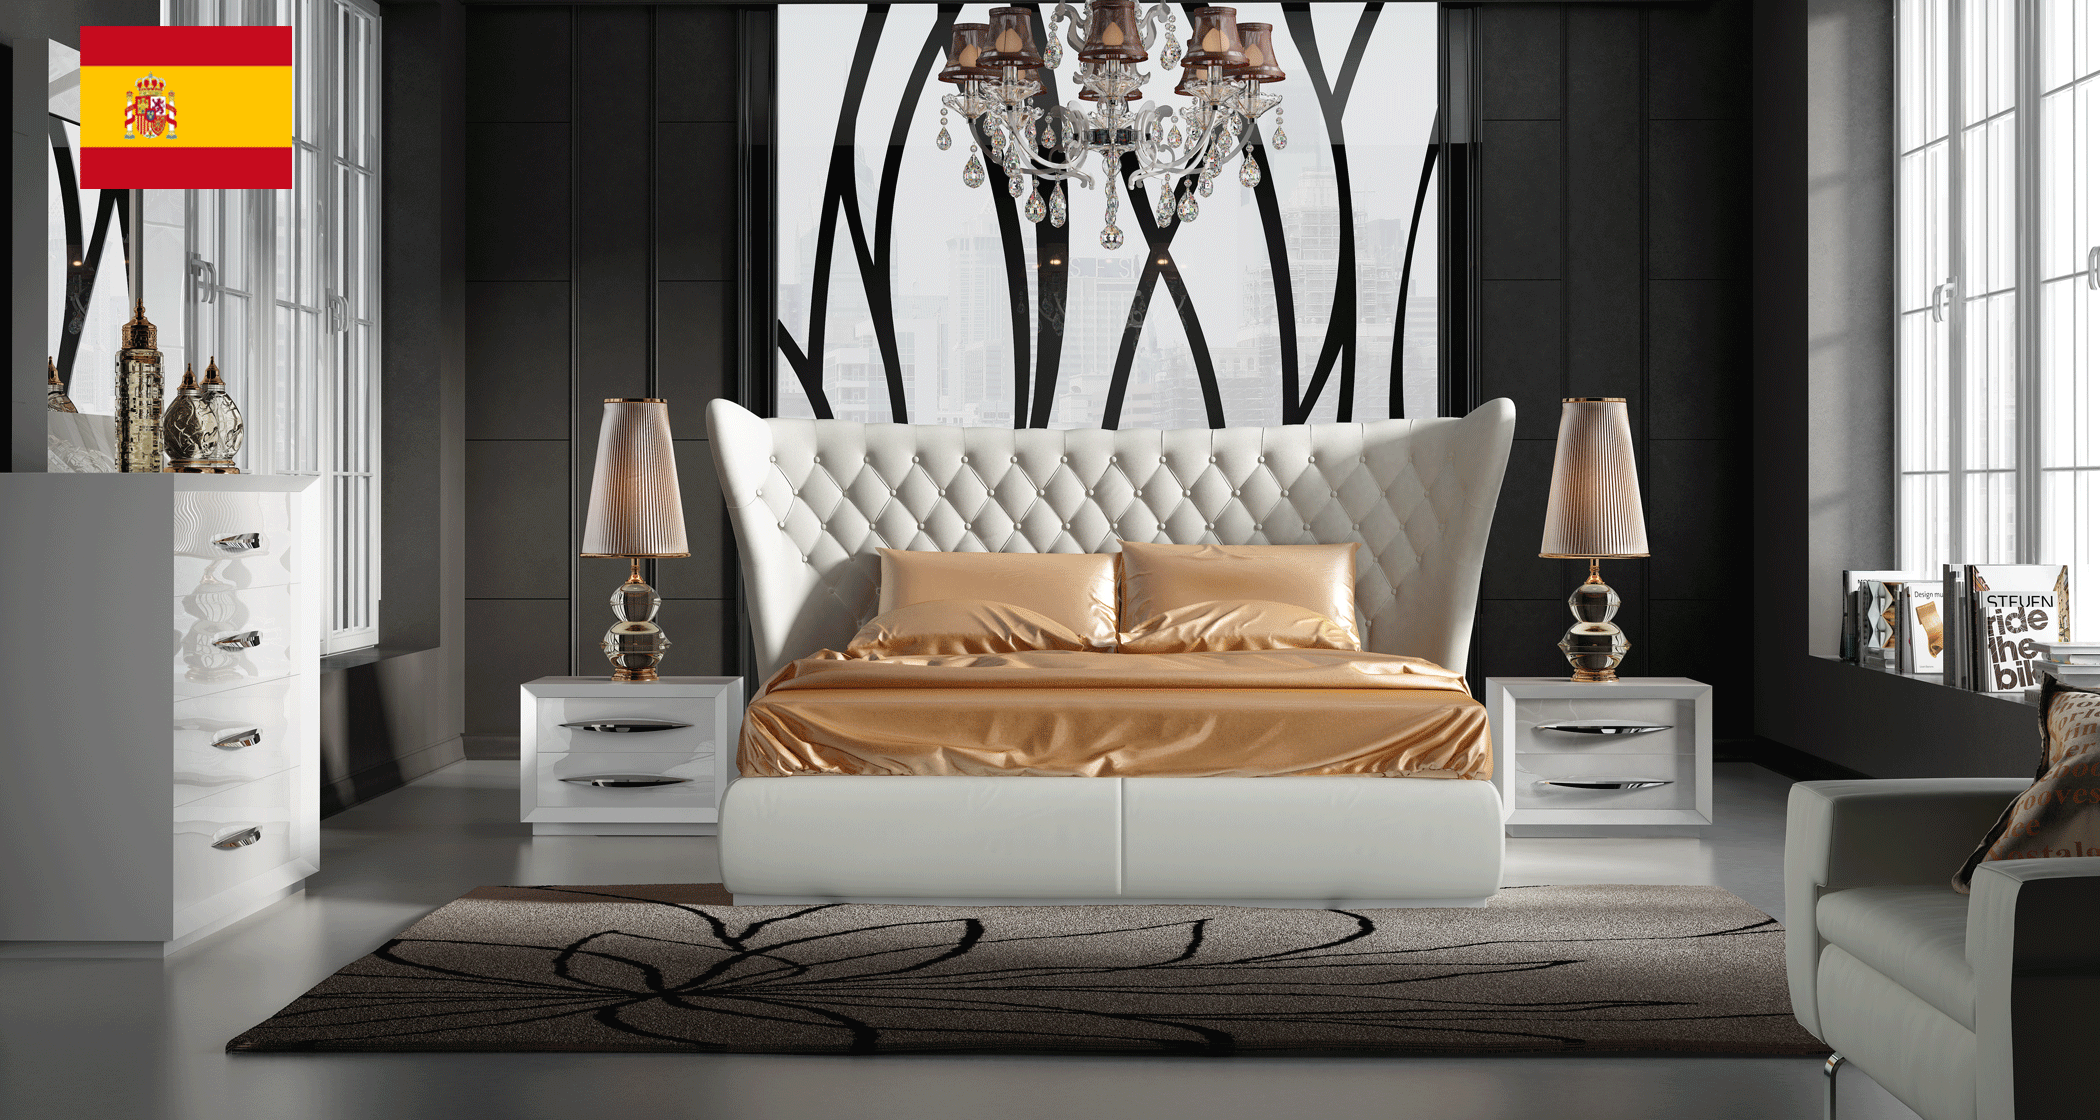 Bedroom Furniture Beds with storage Miami Bedroom